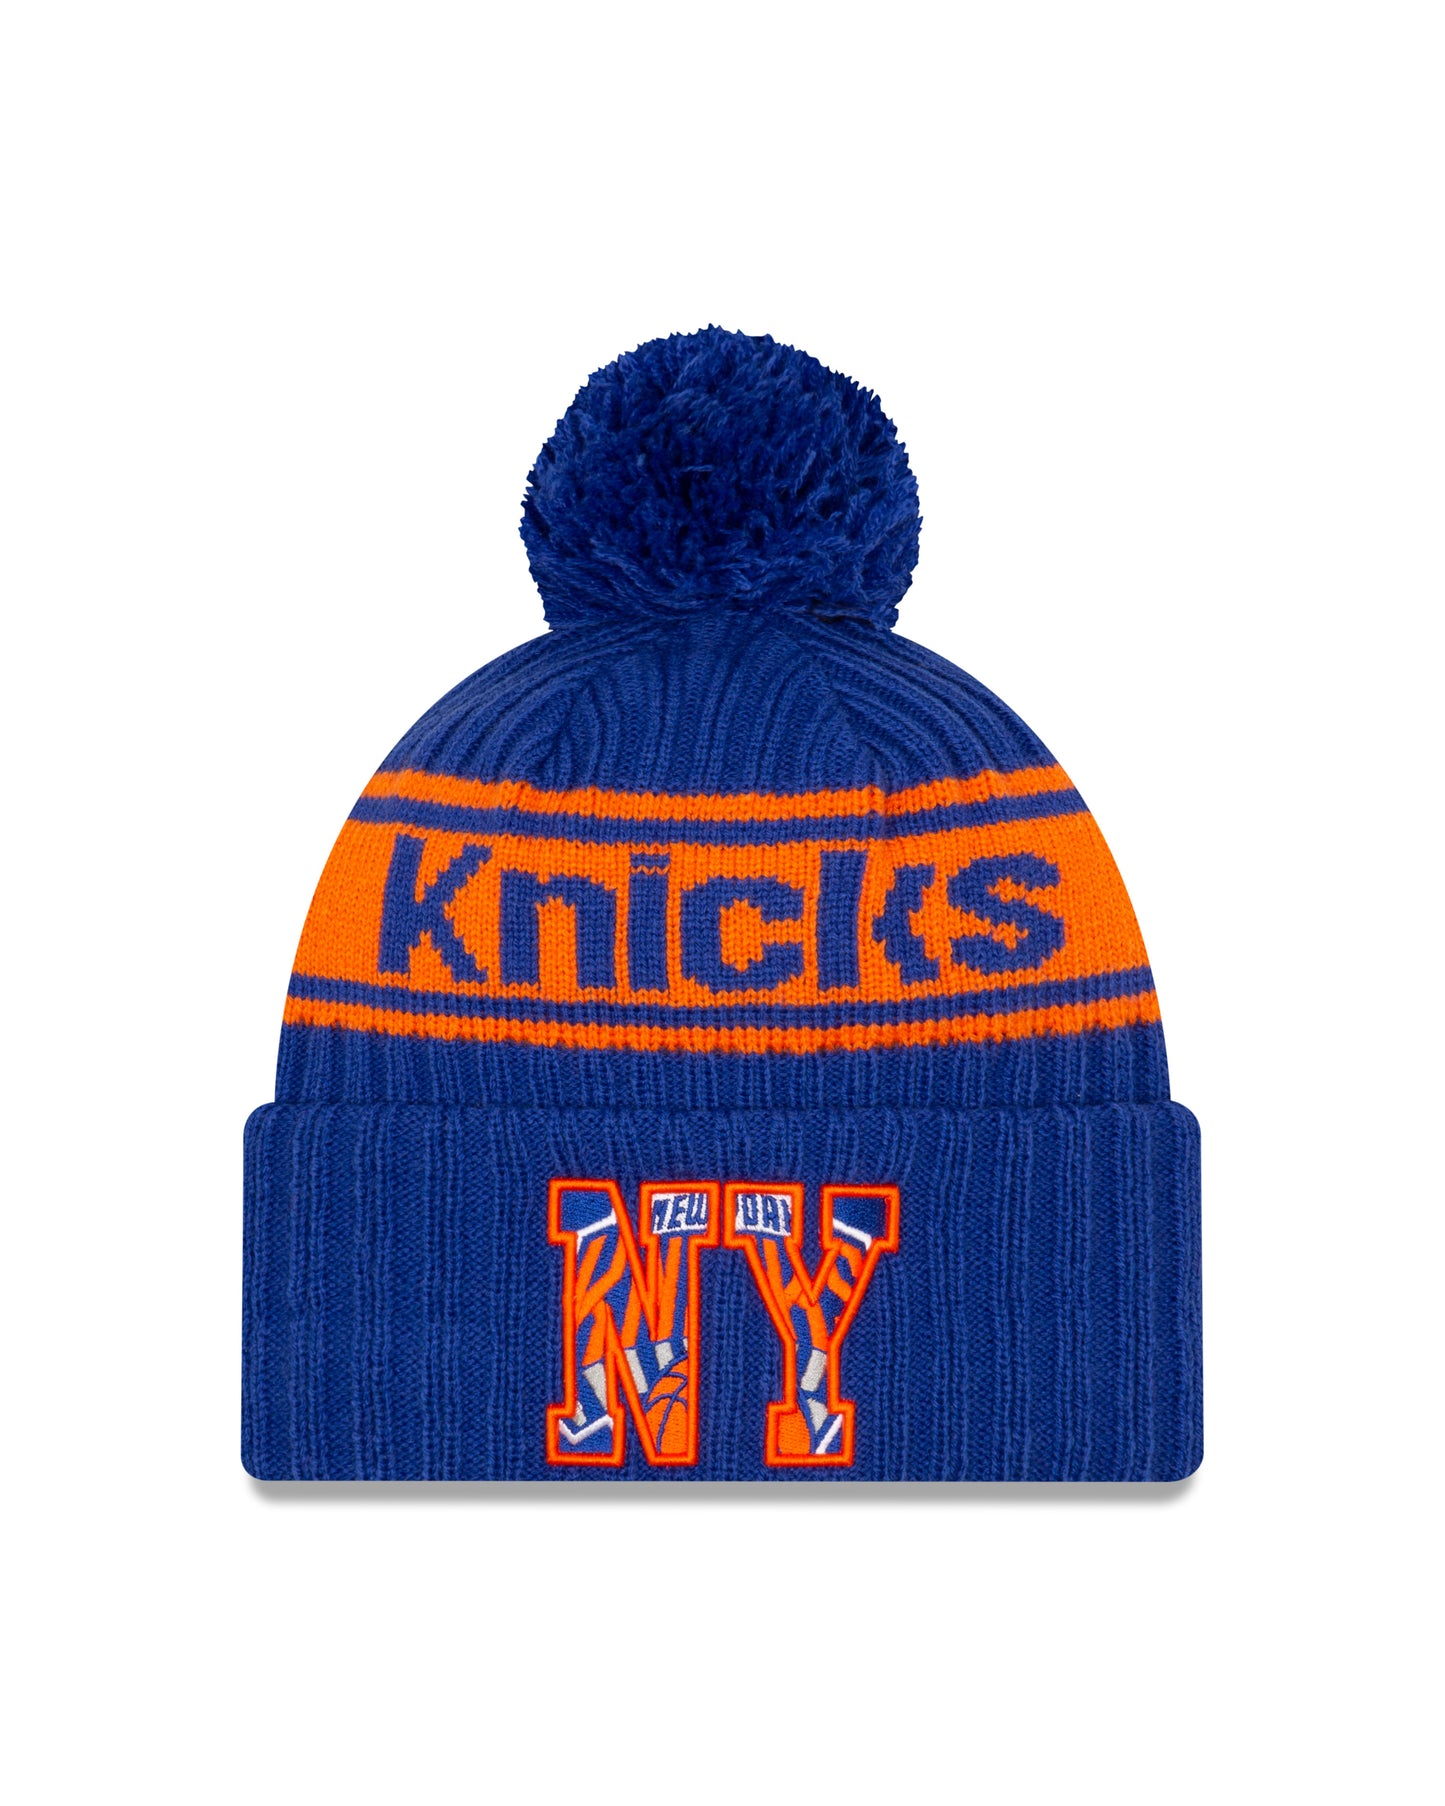 New York Knicks New Era Draft Knit Hat